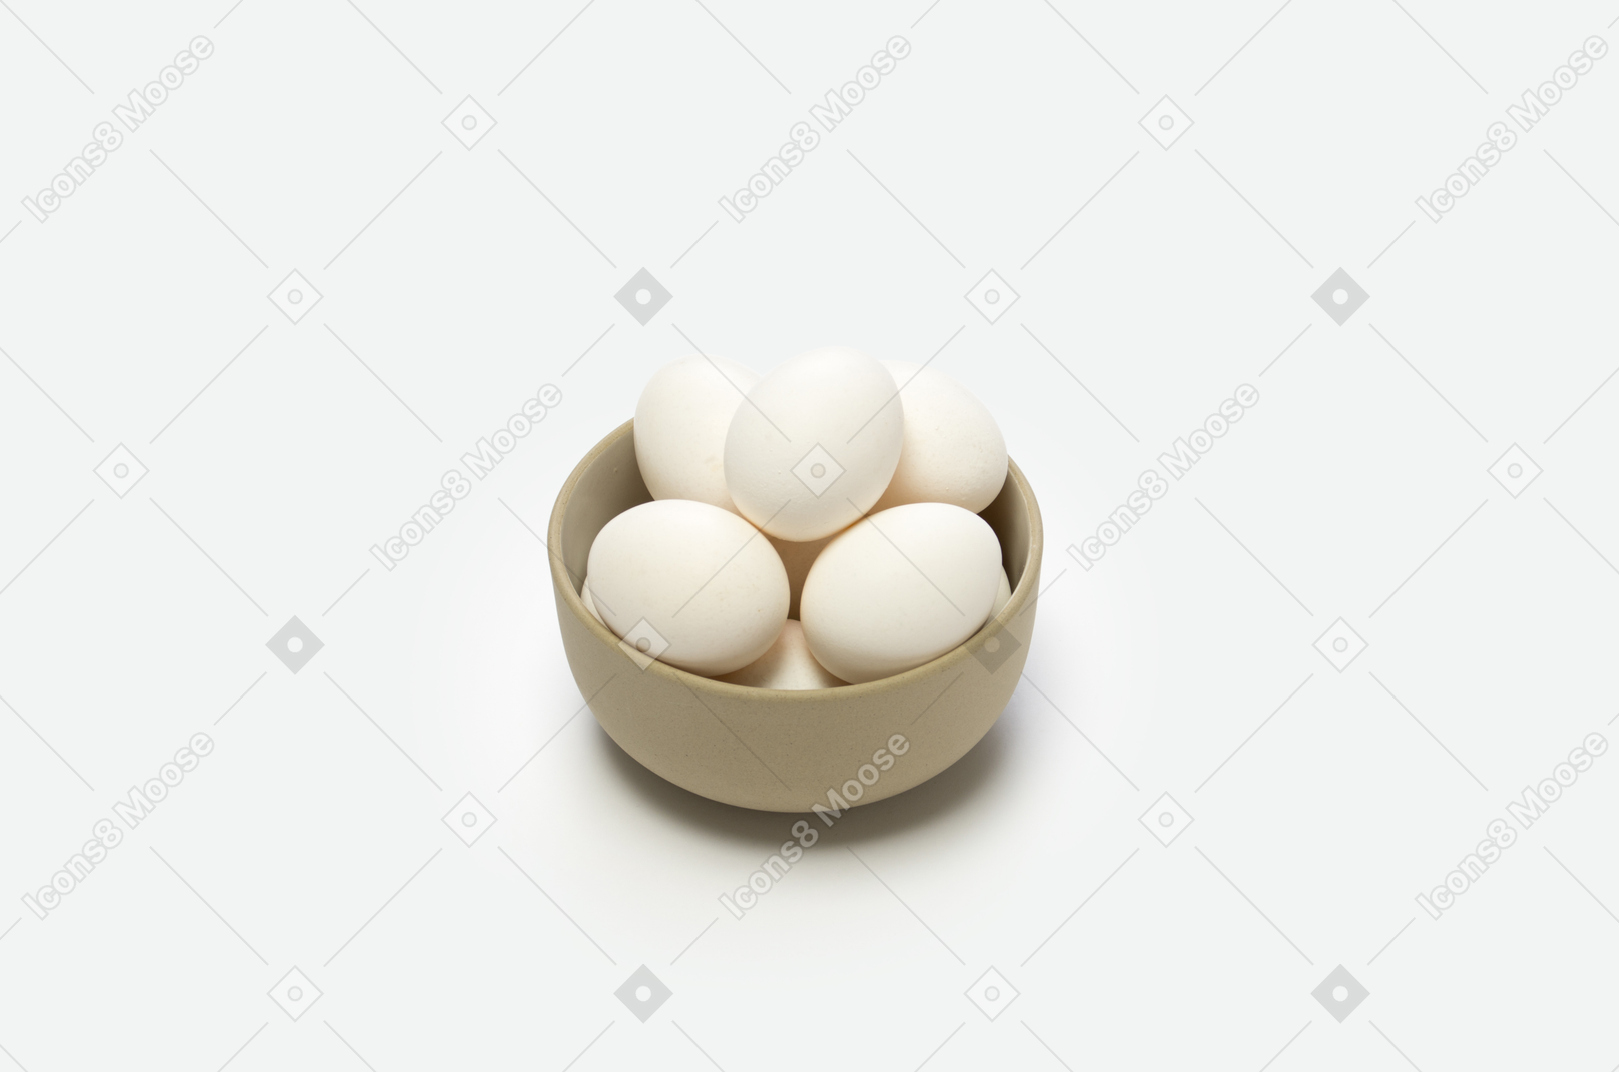 Le uova sono un'ottima fonte di proteine